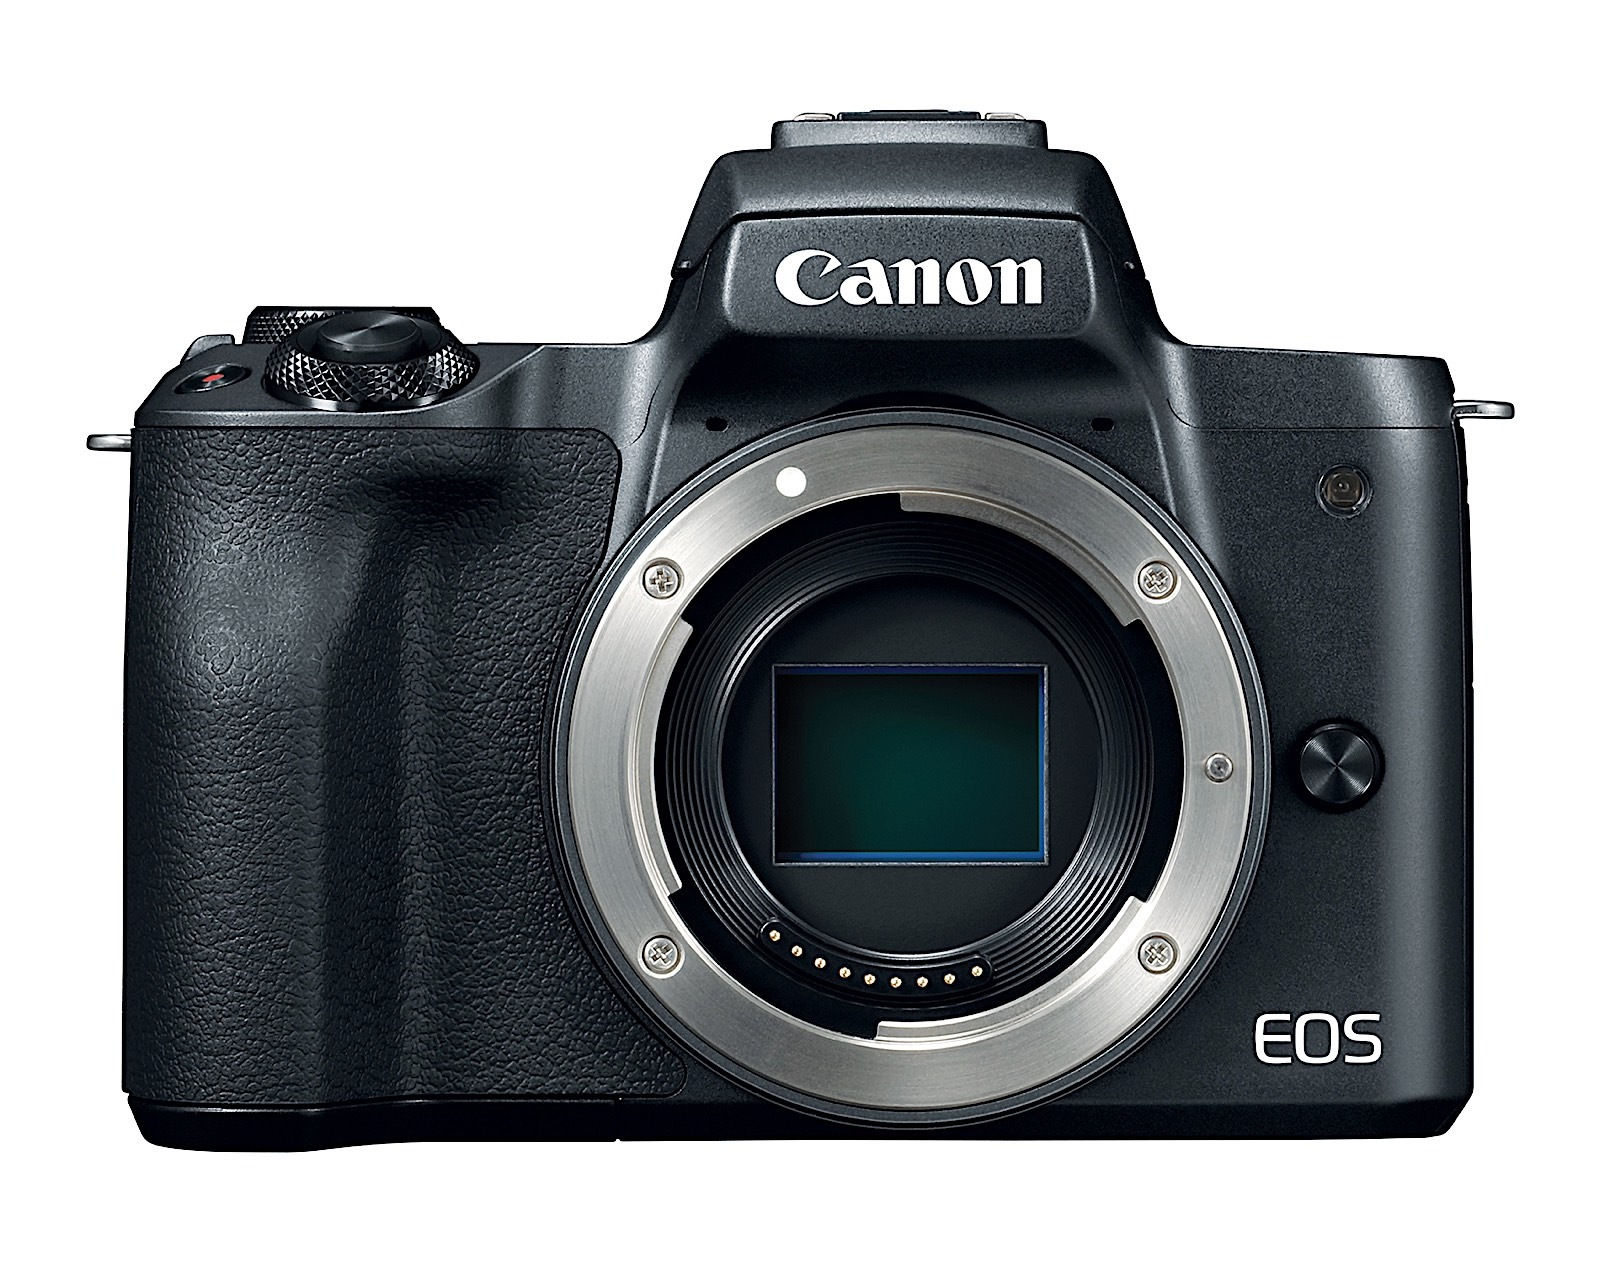 Canon EOS M50 cạnh tranh trực tiếp Sony A7 III và Nikon 1 J5 ở phân khúc máy ảnh không gương lật nhỏ gọn.